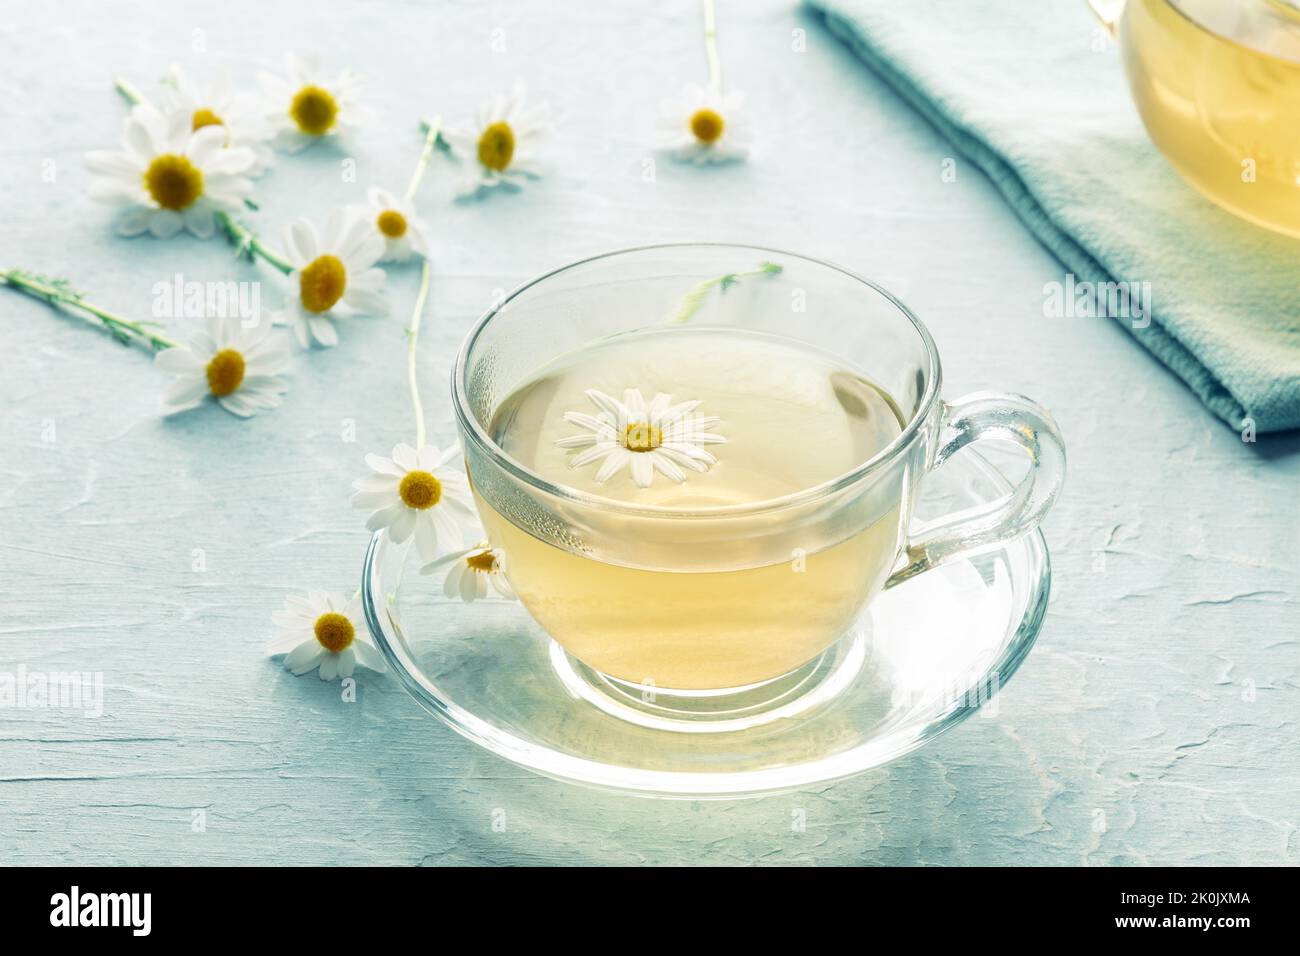 Thé de camomille dans une tasse, une infusion de plantes pour se détendre, herbes organiques Banque D'Images